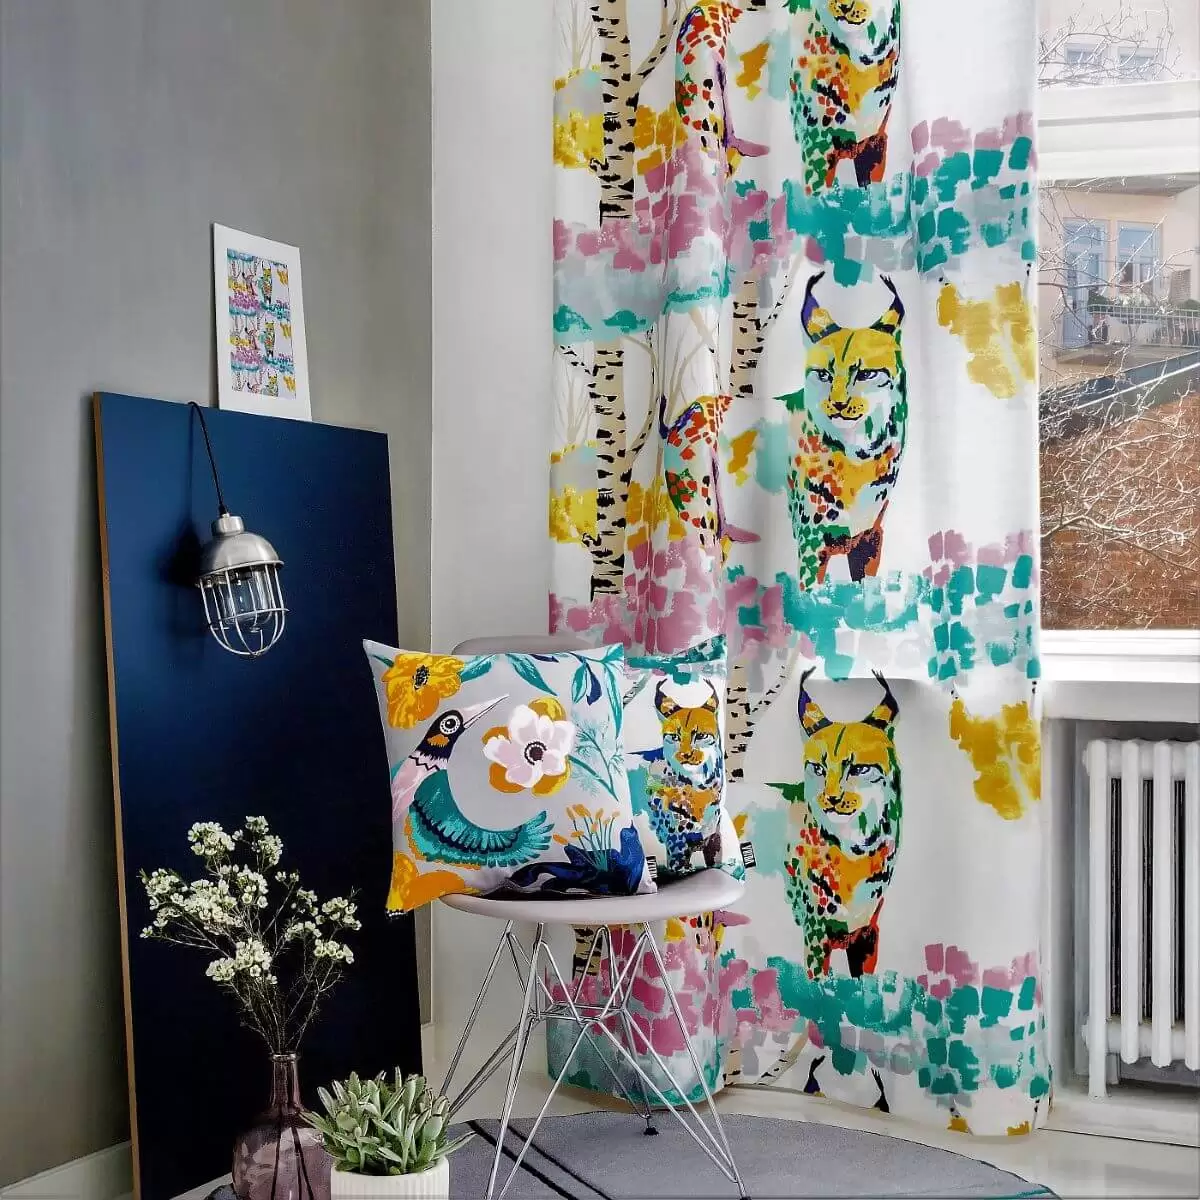 Zasłona kolorowa LUMI ILVES w malowany nowoczesny leśny krajobraz z kolorowym rysiem w aranżacji w skandynawskim szarym salonie. Widok gotowej zasłony na taśmie zawieszonej przy białym oknie. Widoczny skandynawskie krzesło z kolorowymi poduszkami, fragment nowoczesnego dywanu, lampa oraz kwiaty